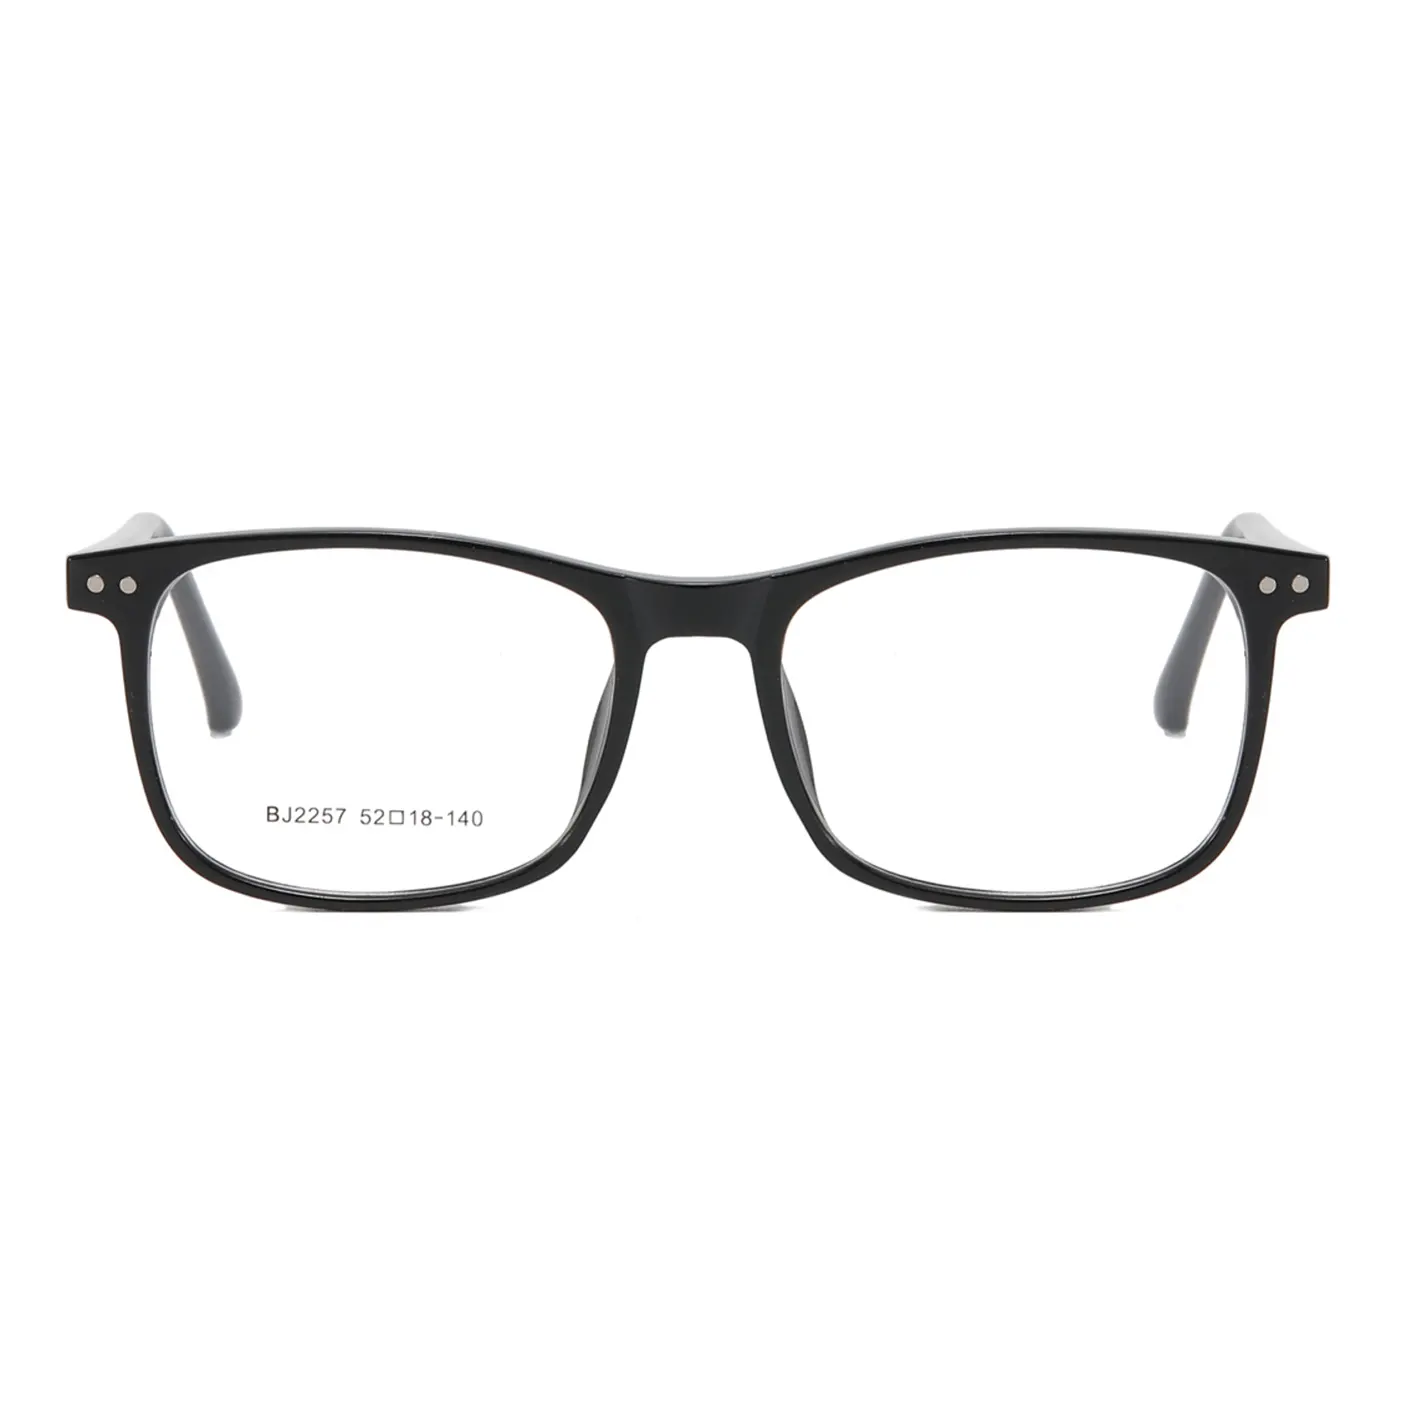 Nouveau cadre optique rectangulaire classique à la mode broche de Contact Logo personnalisé montures de lunettes pour femmes et hommes